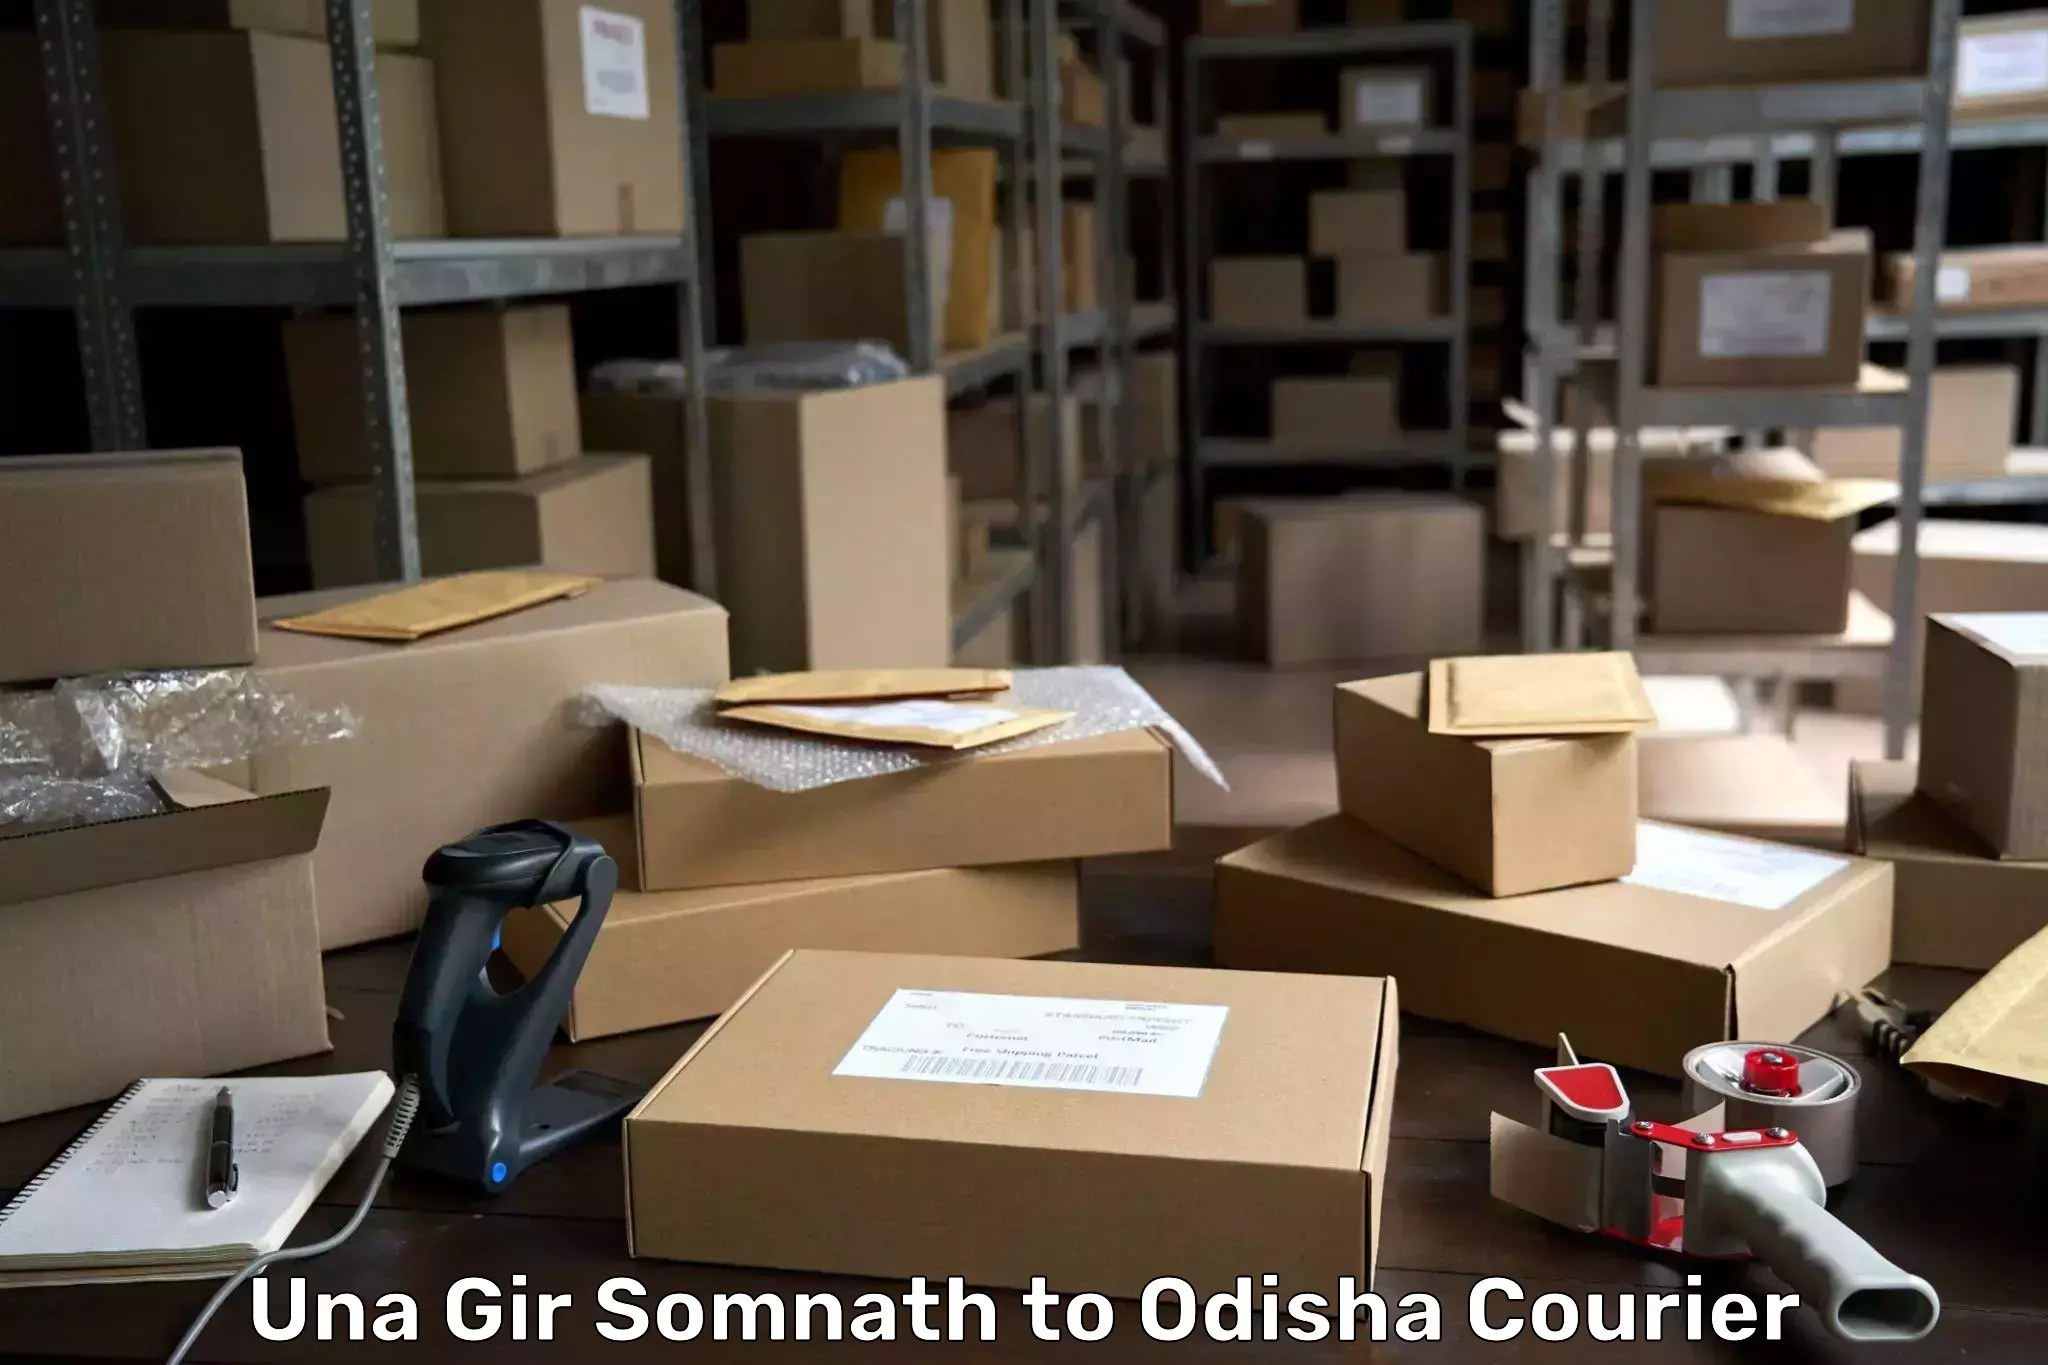 Professional courier handling Una Gir Somnath to Rourkela